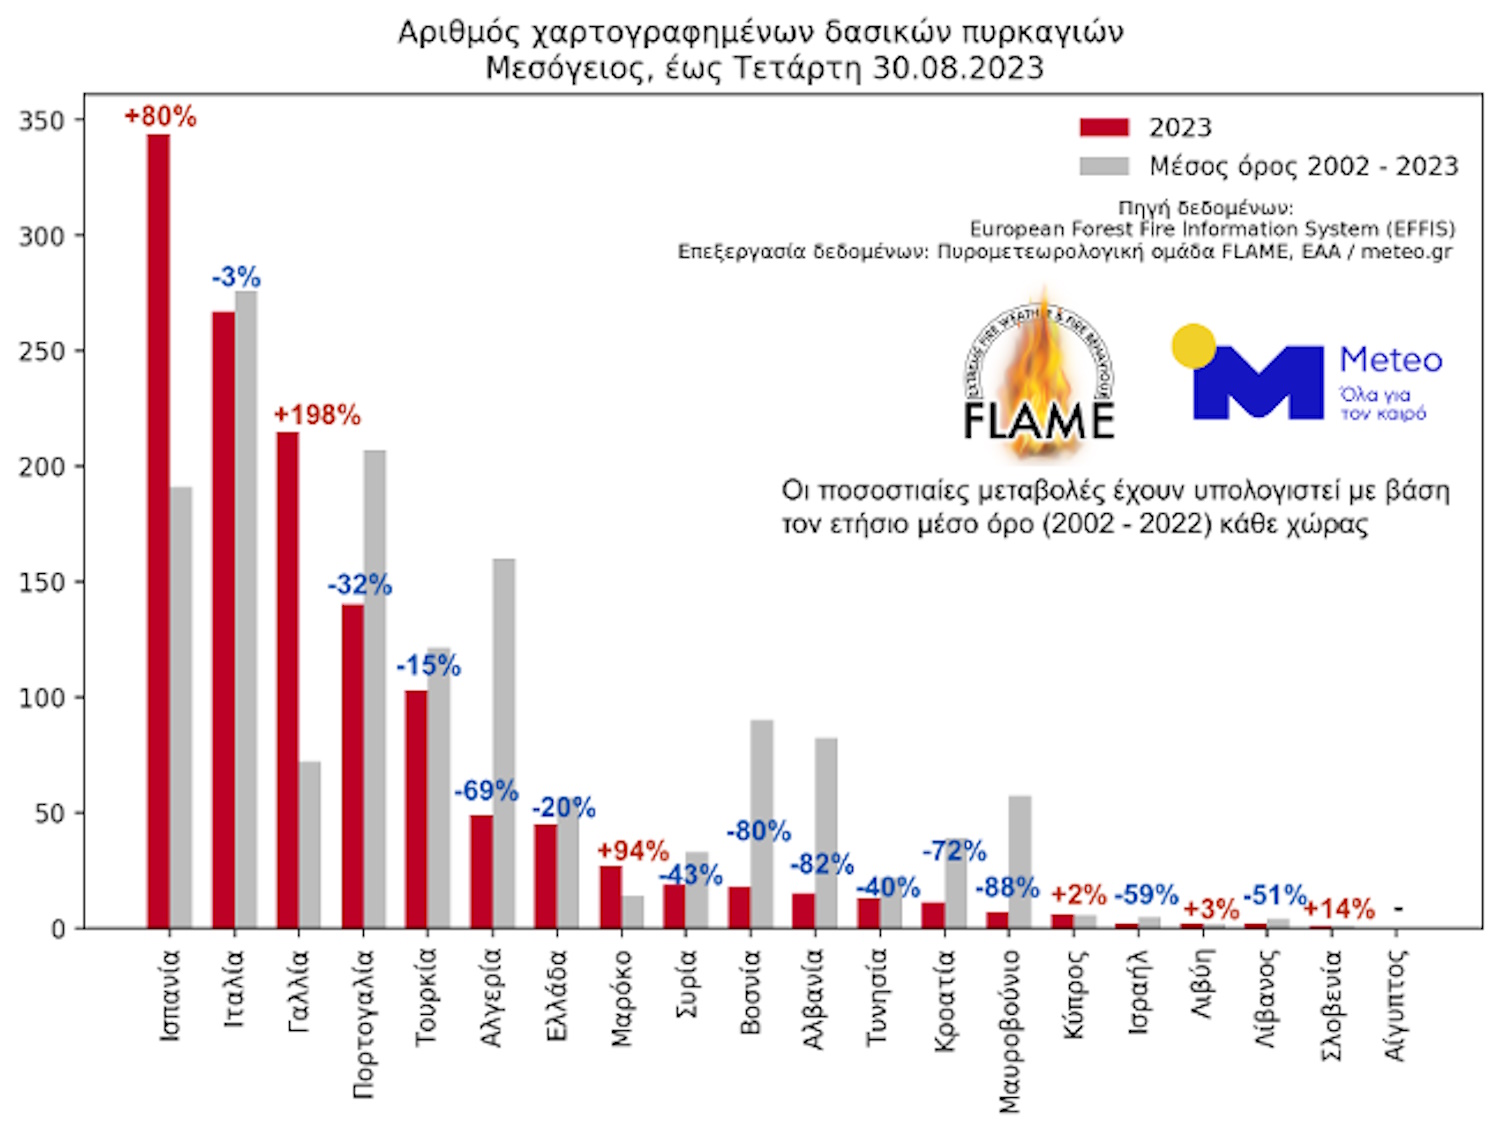 Meteo για φωτιές: Αρνητική πρωτιά φέτος για την Ελλάδα με πάνω από 1,6 εκατ. καμένα στρέμματα